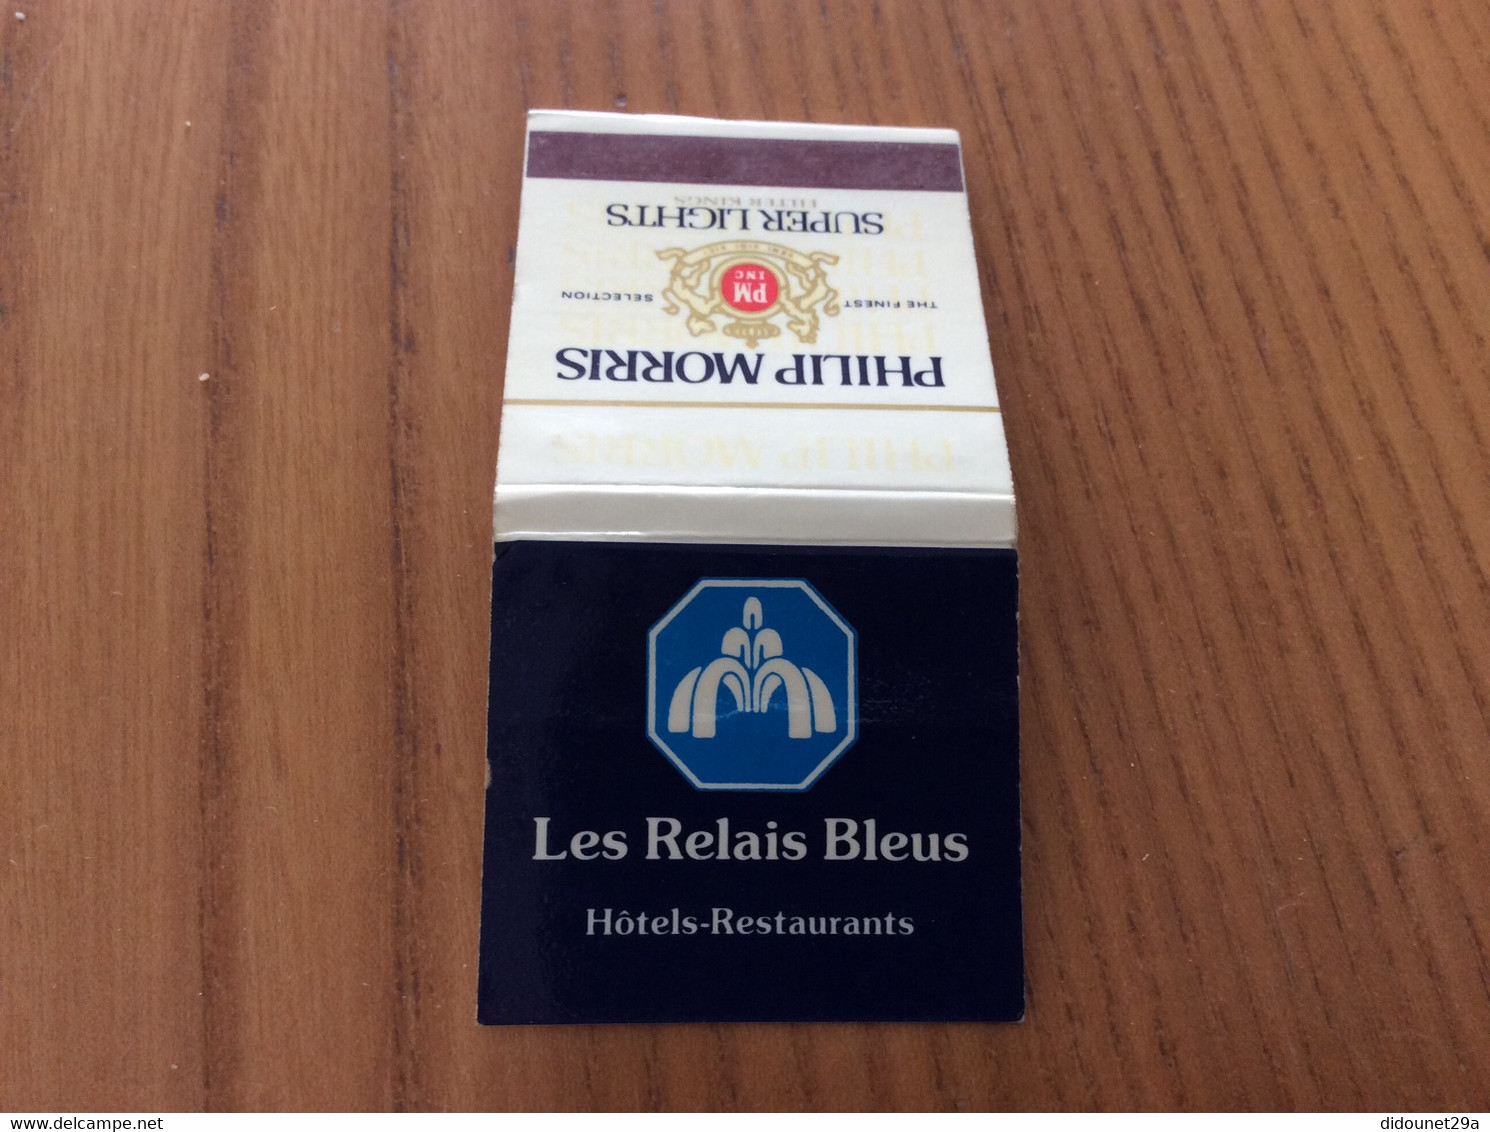 Pochette D'allumettes ** P. Vendôme "PHILIP MORRIS SUPER LIGHTS / Les Relais Bleus Hôtels Restaurants" (cigarettes) - Boites D'allumettes